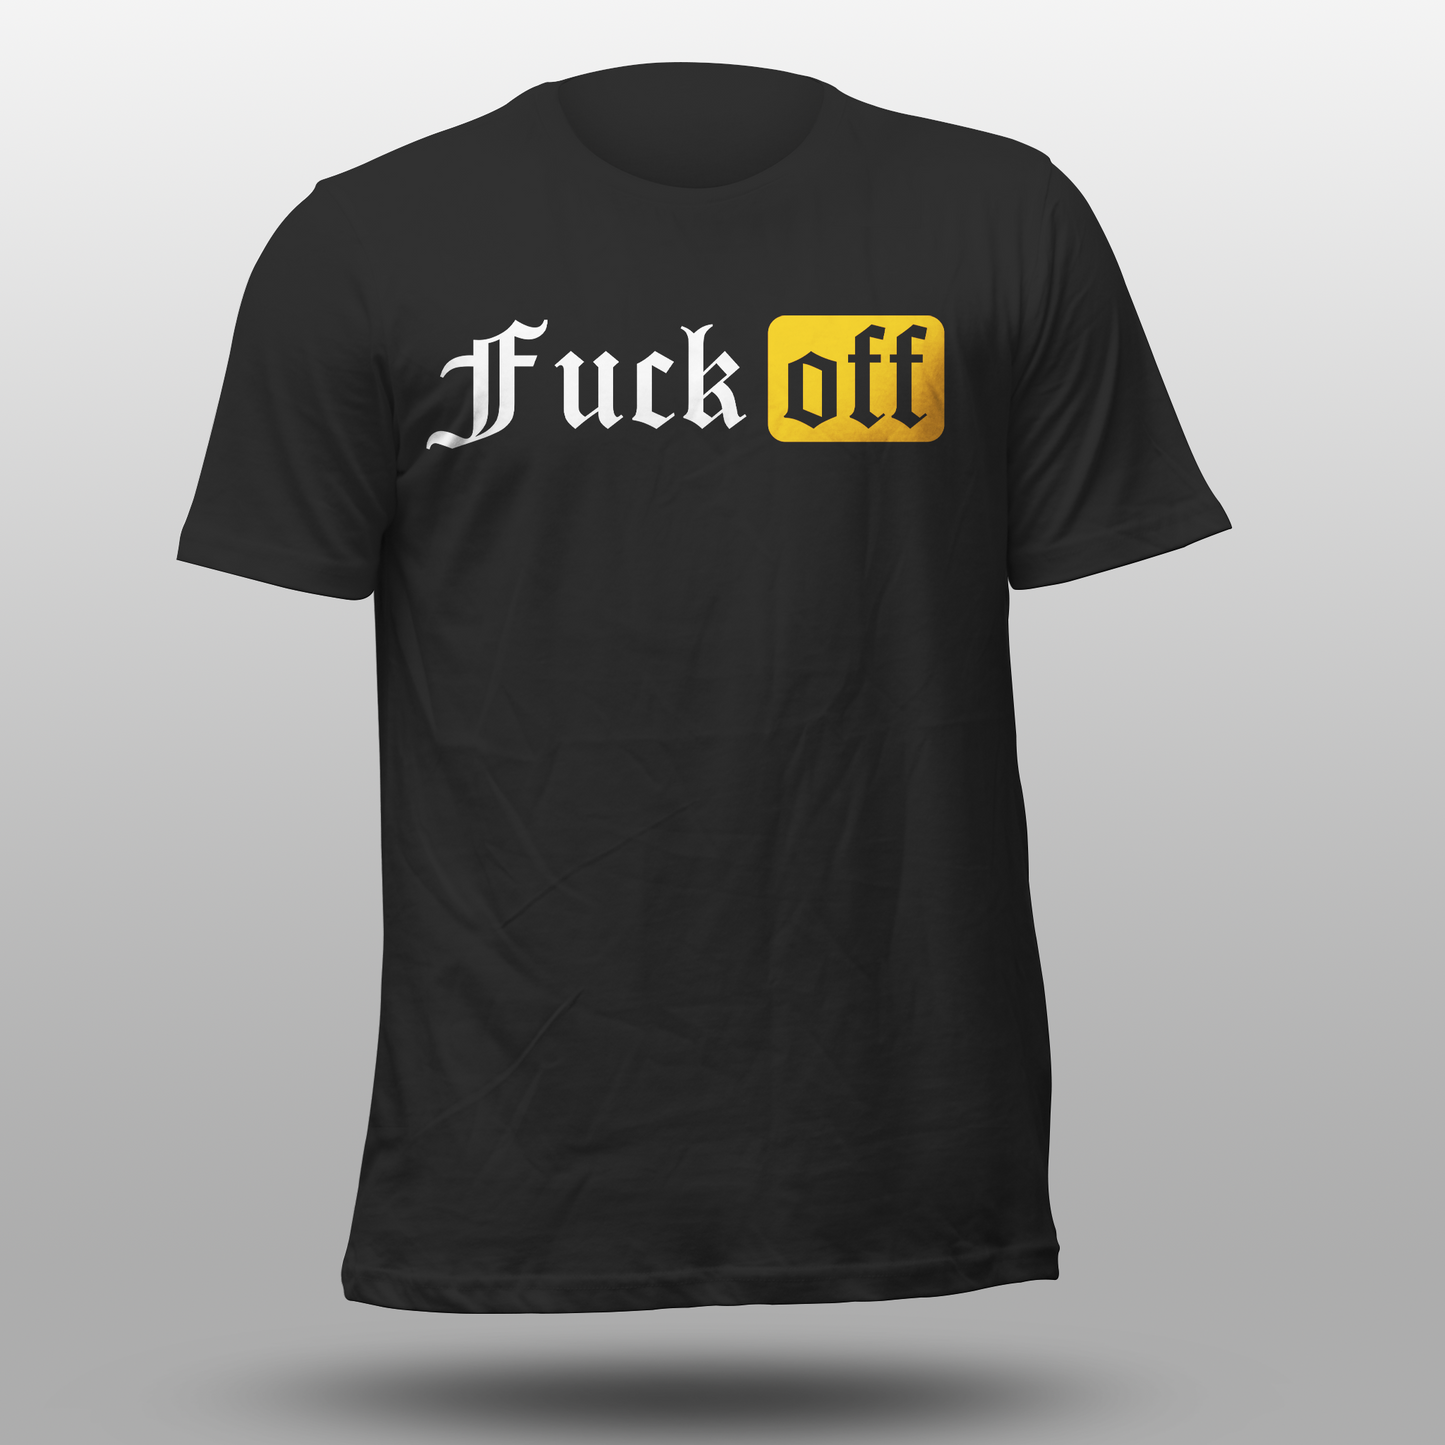 T-Shirt "Fuck off"